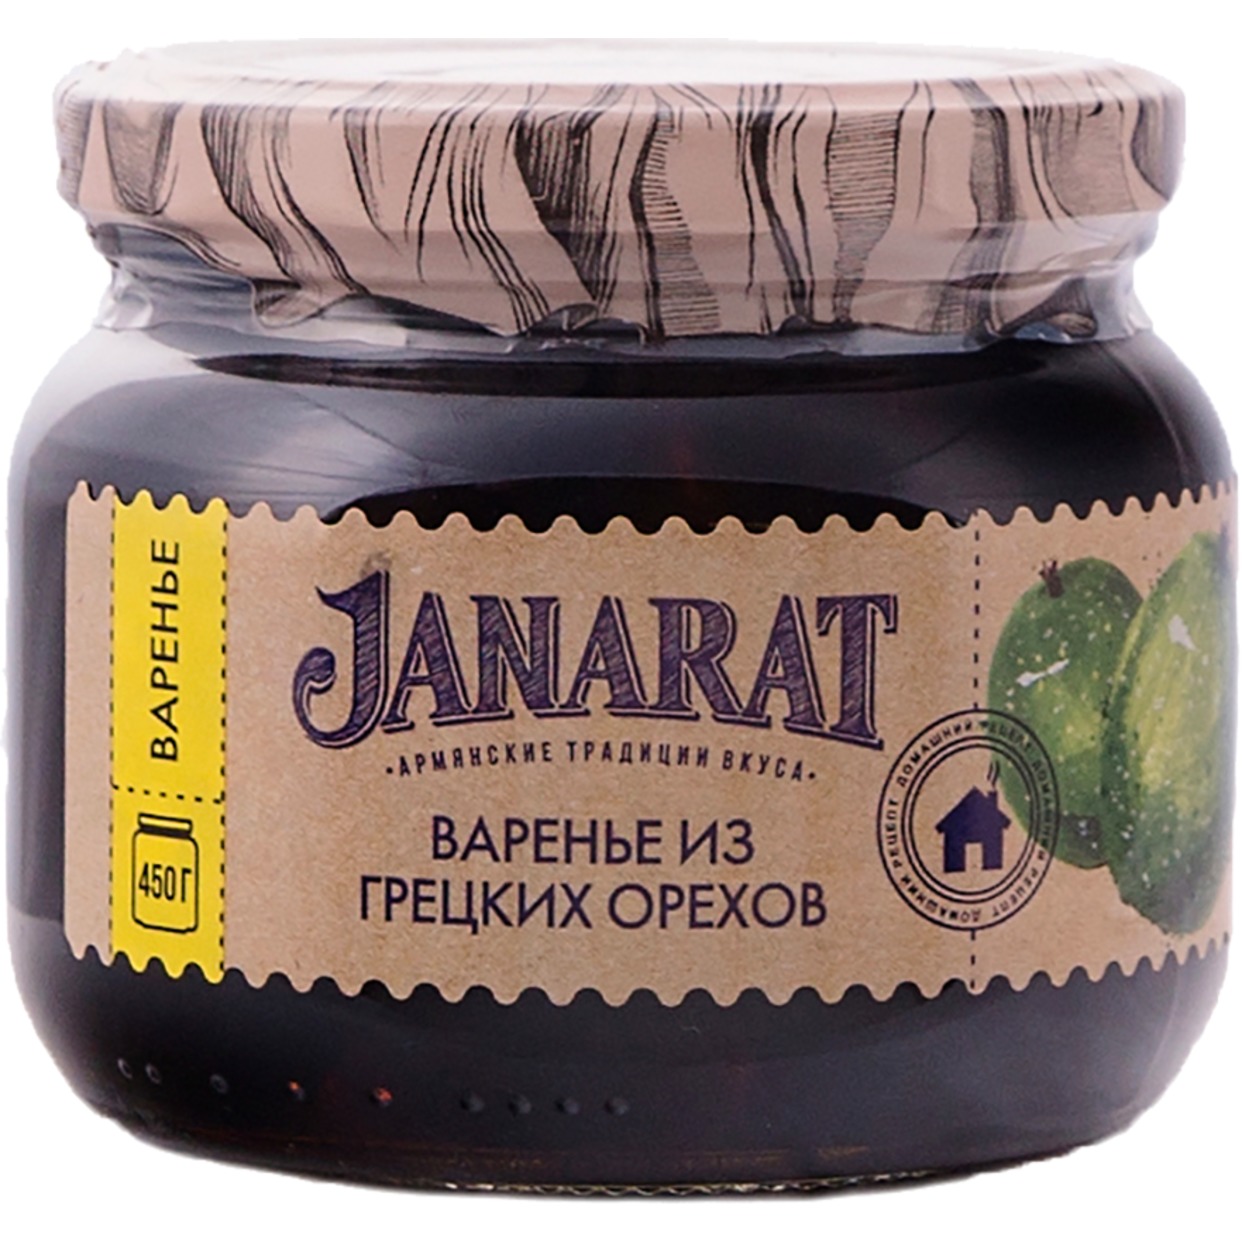 Варенье Janarat, грецкие орехи, 450 г